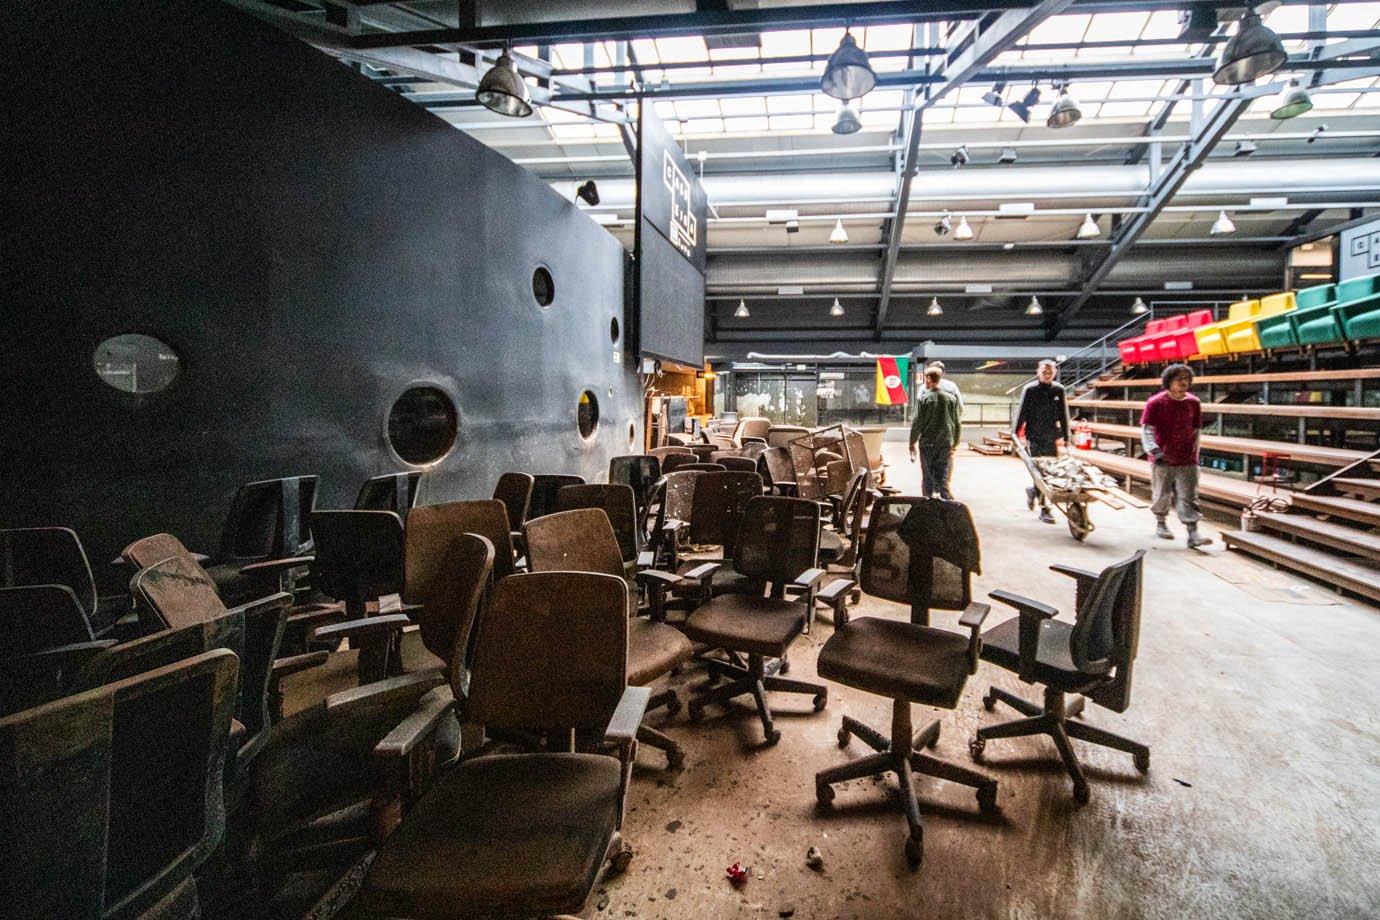 A enchente pegou em cheio as empresas que estavam no primeiro andar, e mesas e cadeiras foram perdidas